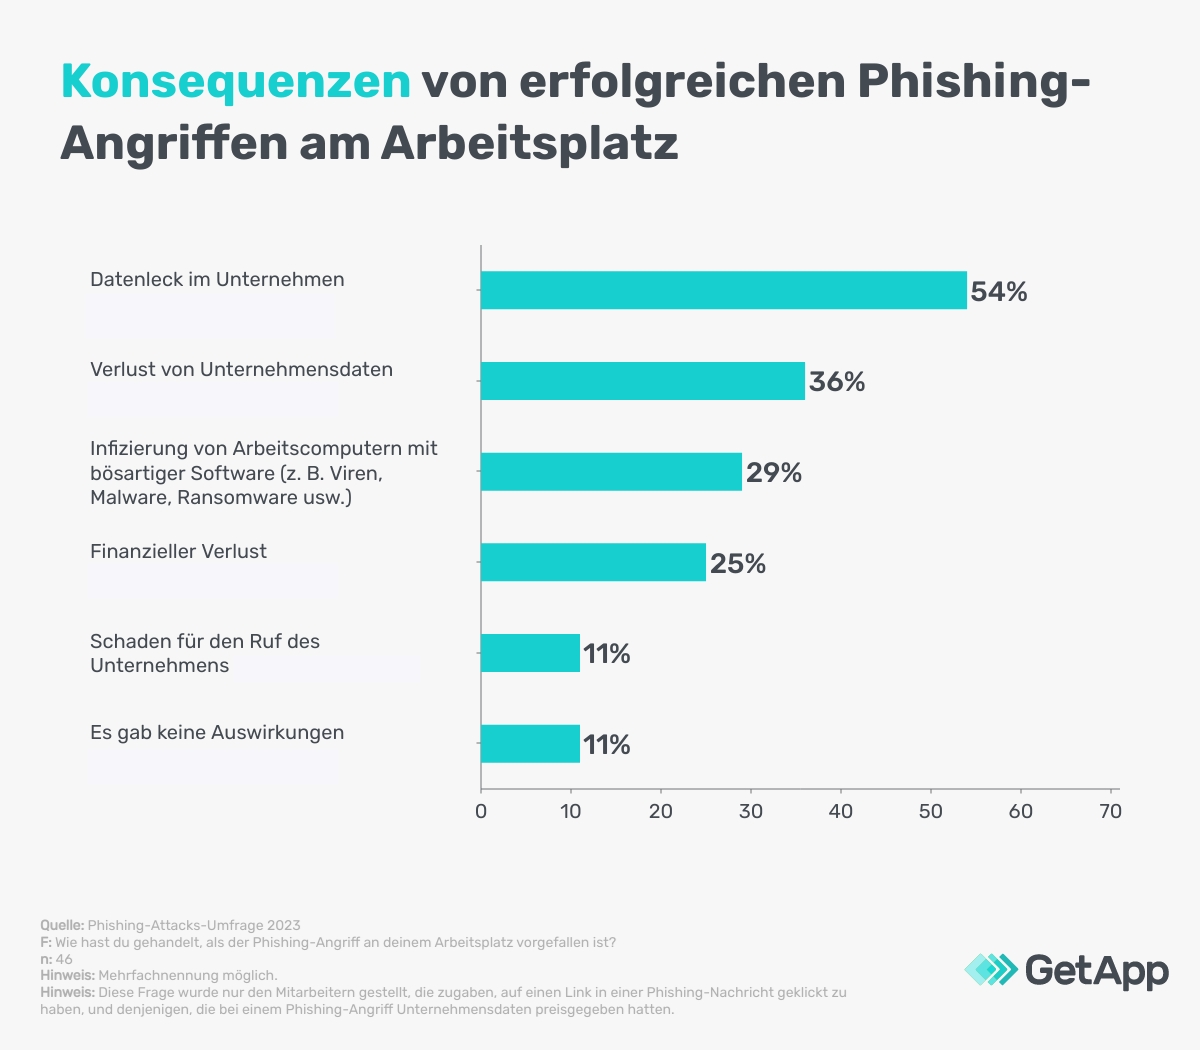 Auswirkungen erfolgreicher Phishing-Angriffe auf das UnternehmenAlt: Auswirkungen erfolgreicher Phishing-Angriffe auf das Unternehmen